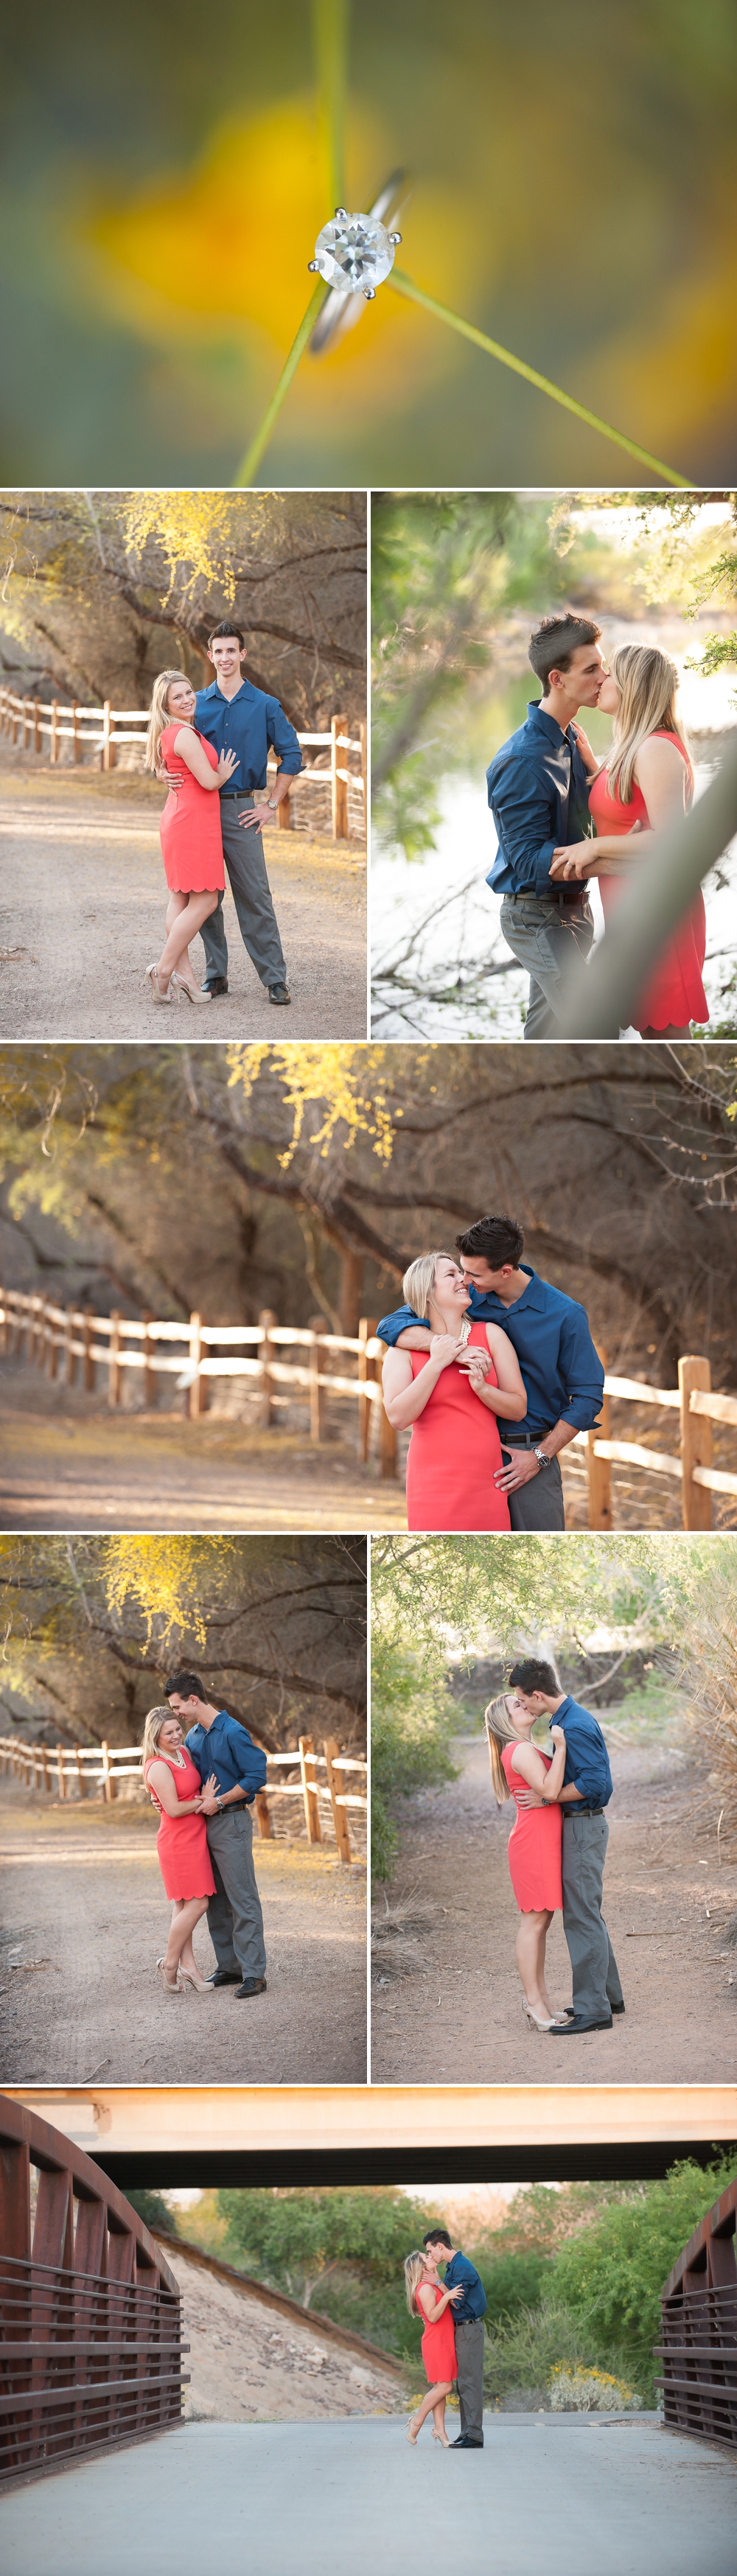 Arizona Photographer Couple Ring Kissing Embracing Smiling Bridge Photography 